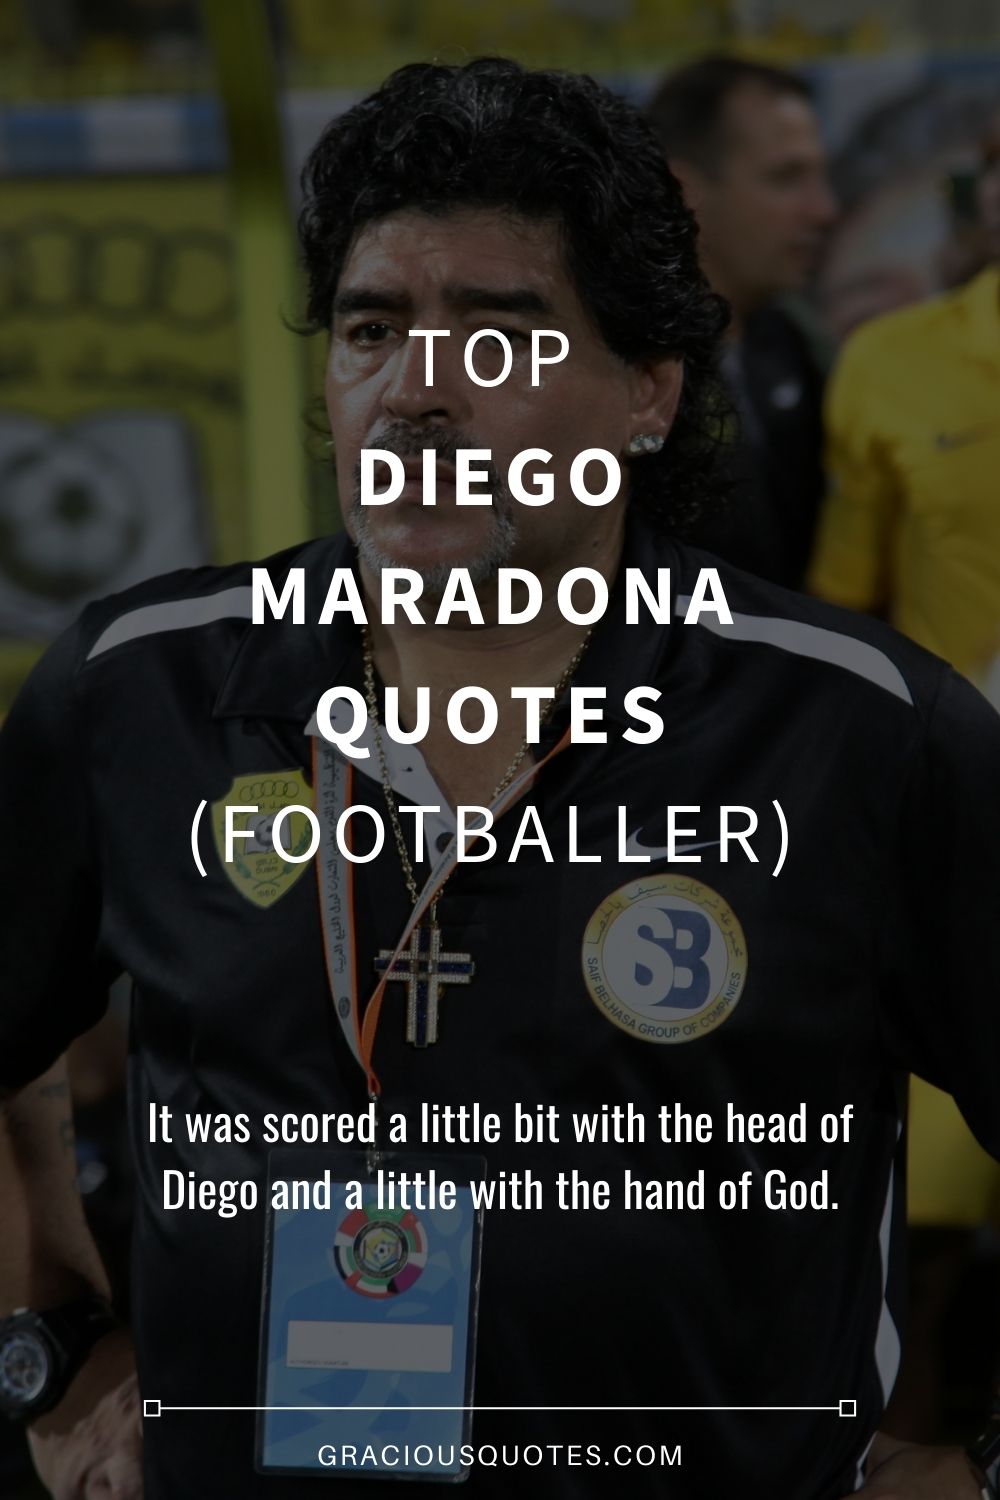 Top Diego Maradona Quotes (FOOTBALLER) - Gracious Quotes